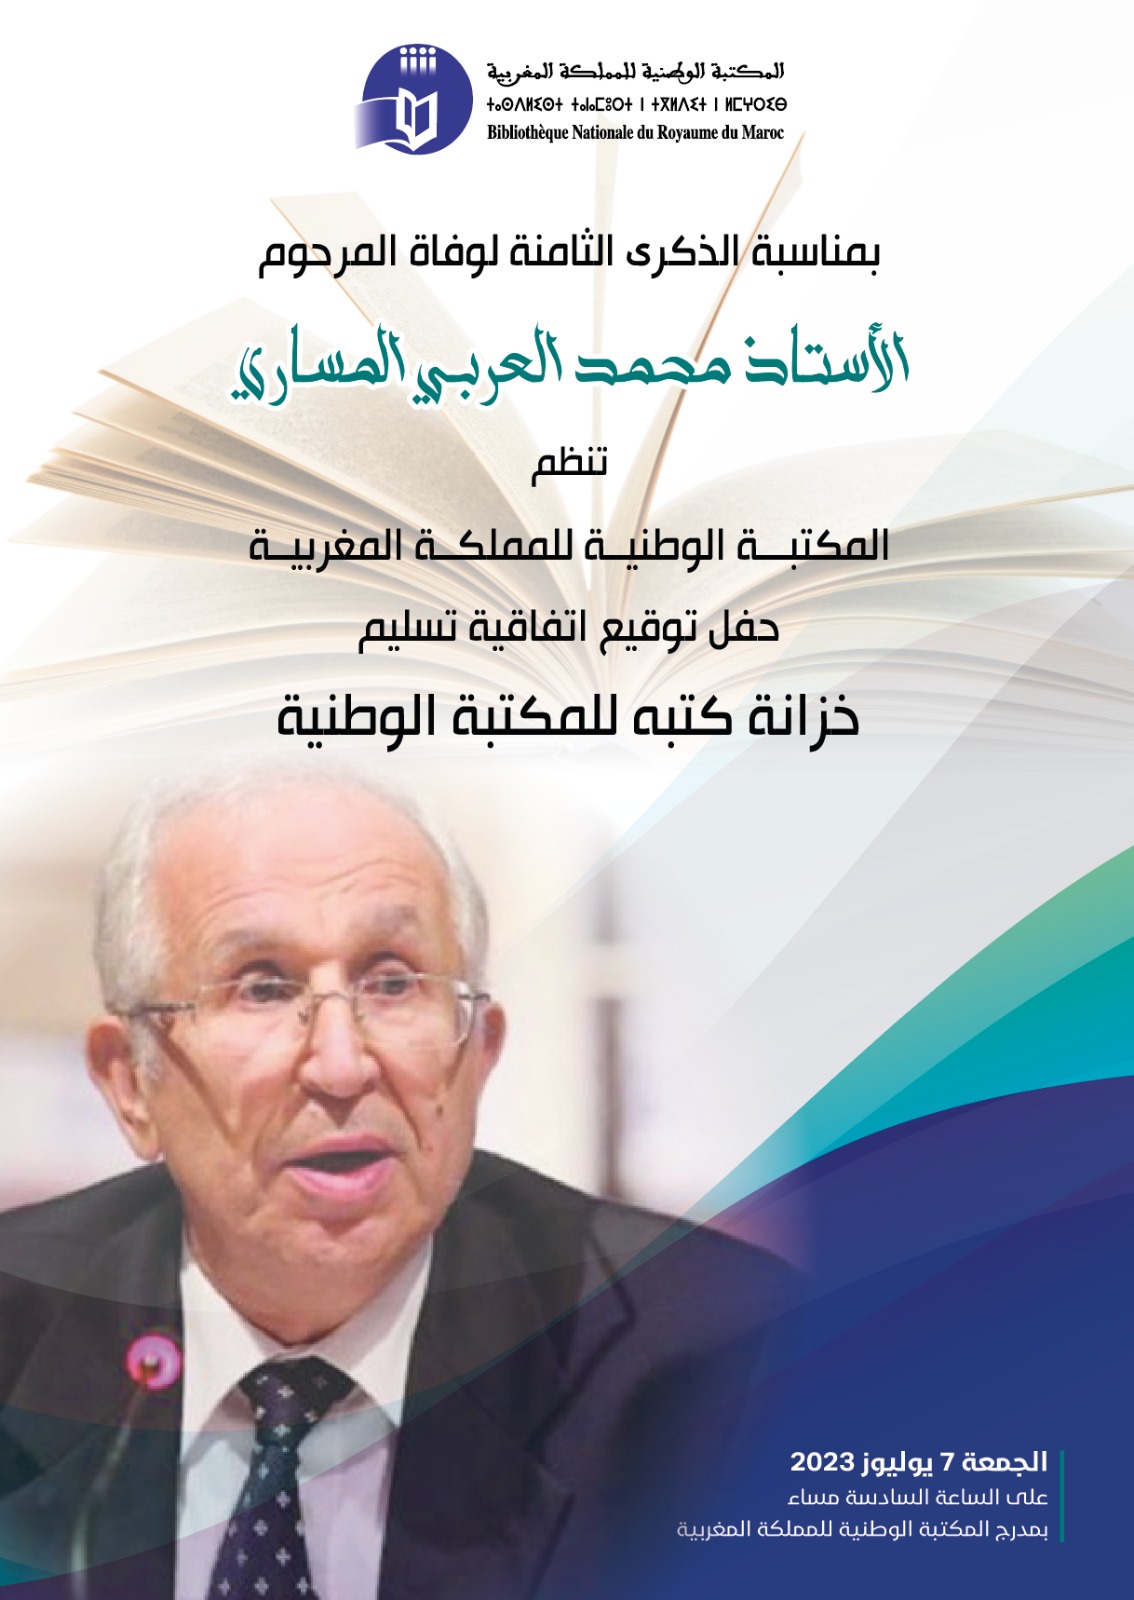 حفل توقيع اتفاقية تسليم خزانة كتب الأستاذ محمد العربي المساري للمكتبة الوطنية 